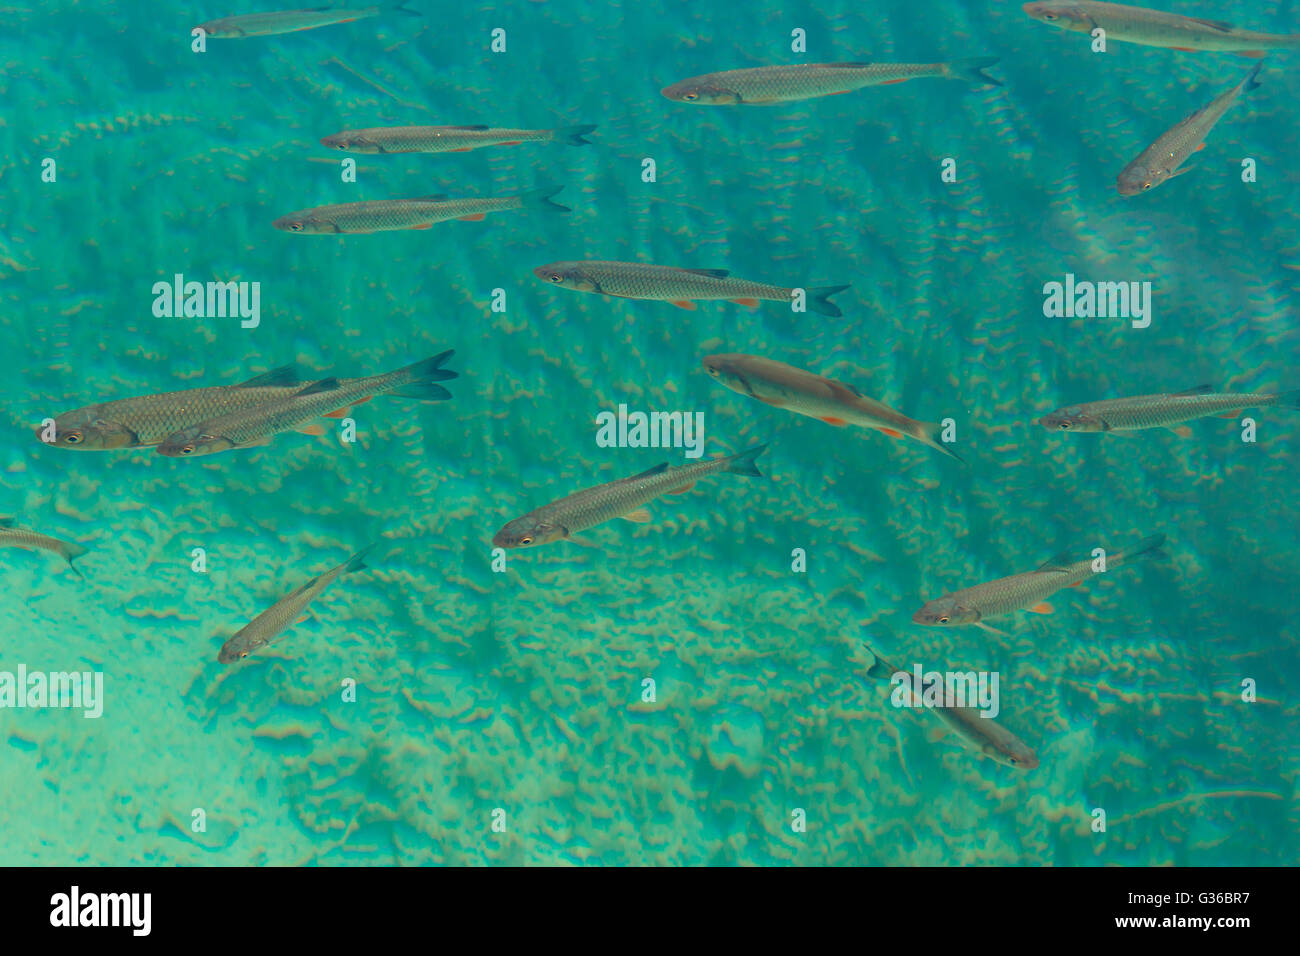 Foto di una secca di pesce catturato nel parco nazionale dei Laghi di Plitvice in Croazia Foto Stock